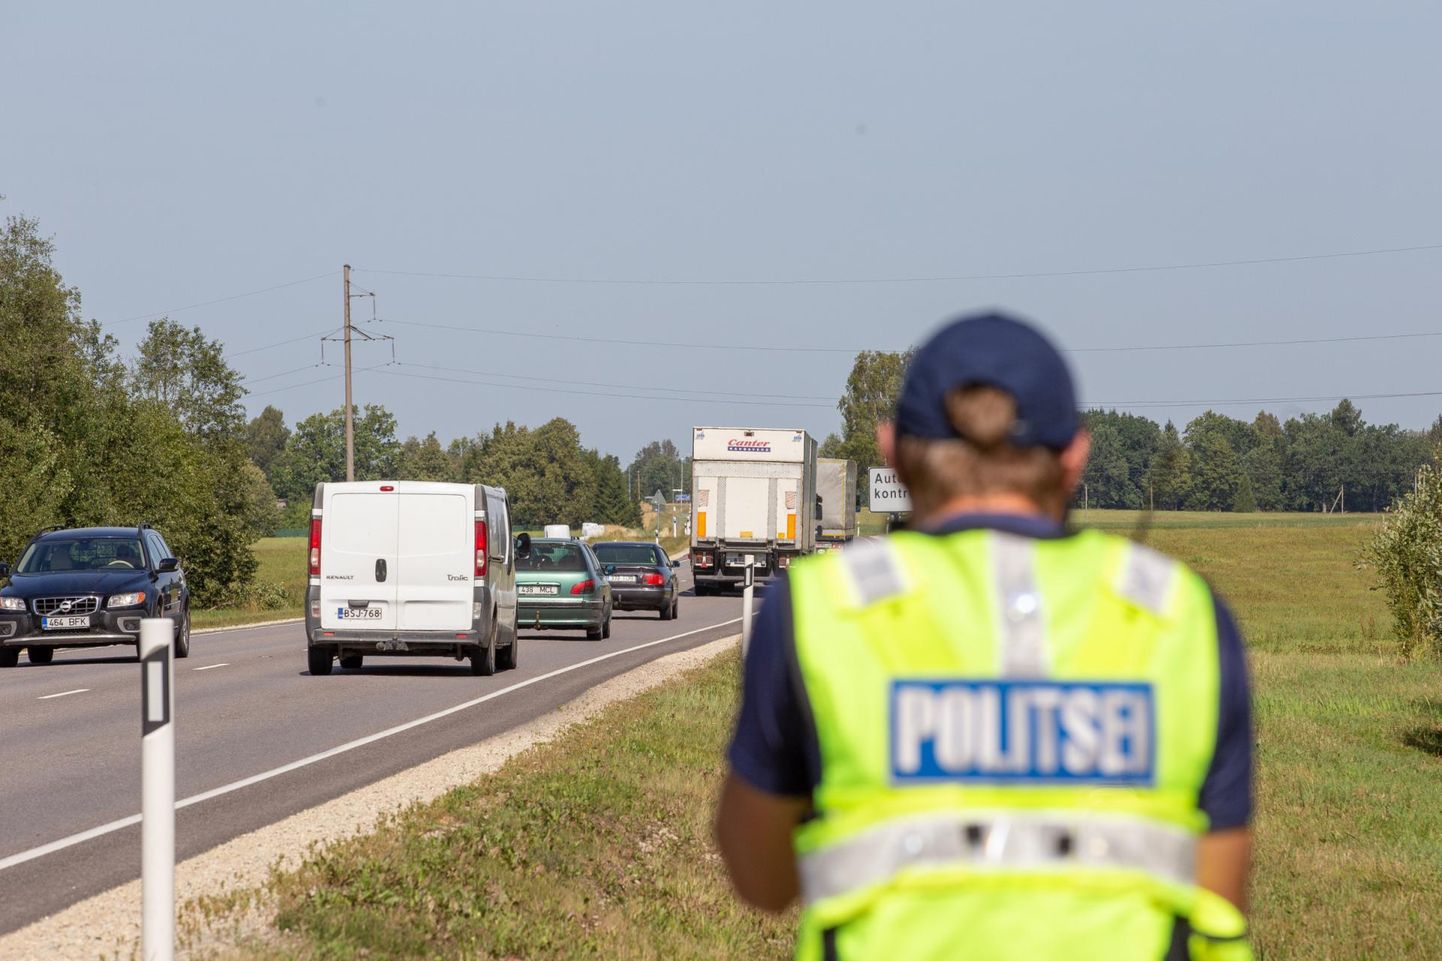 Politsei tõstis augustis liiklusjärelevalve mahtu, et suvisel ajal liiklust senisest rohkem rahustada ja nähtav olla.